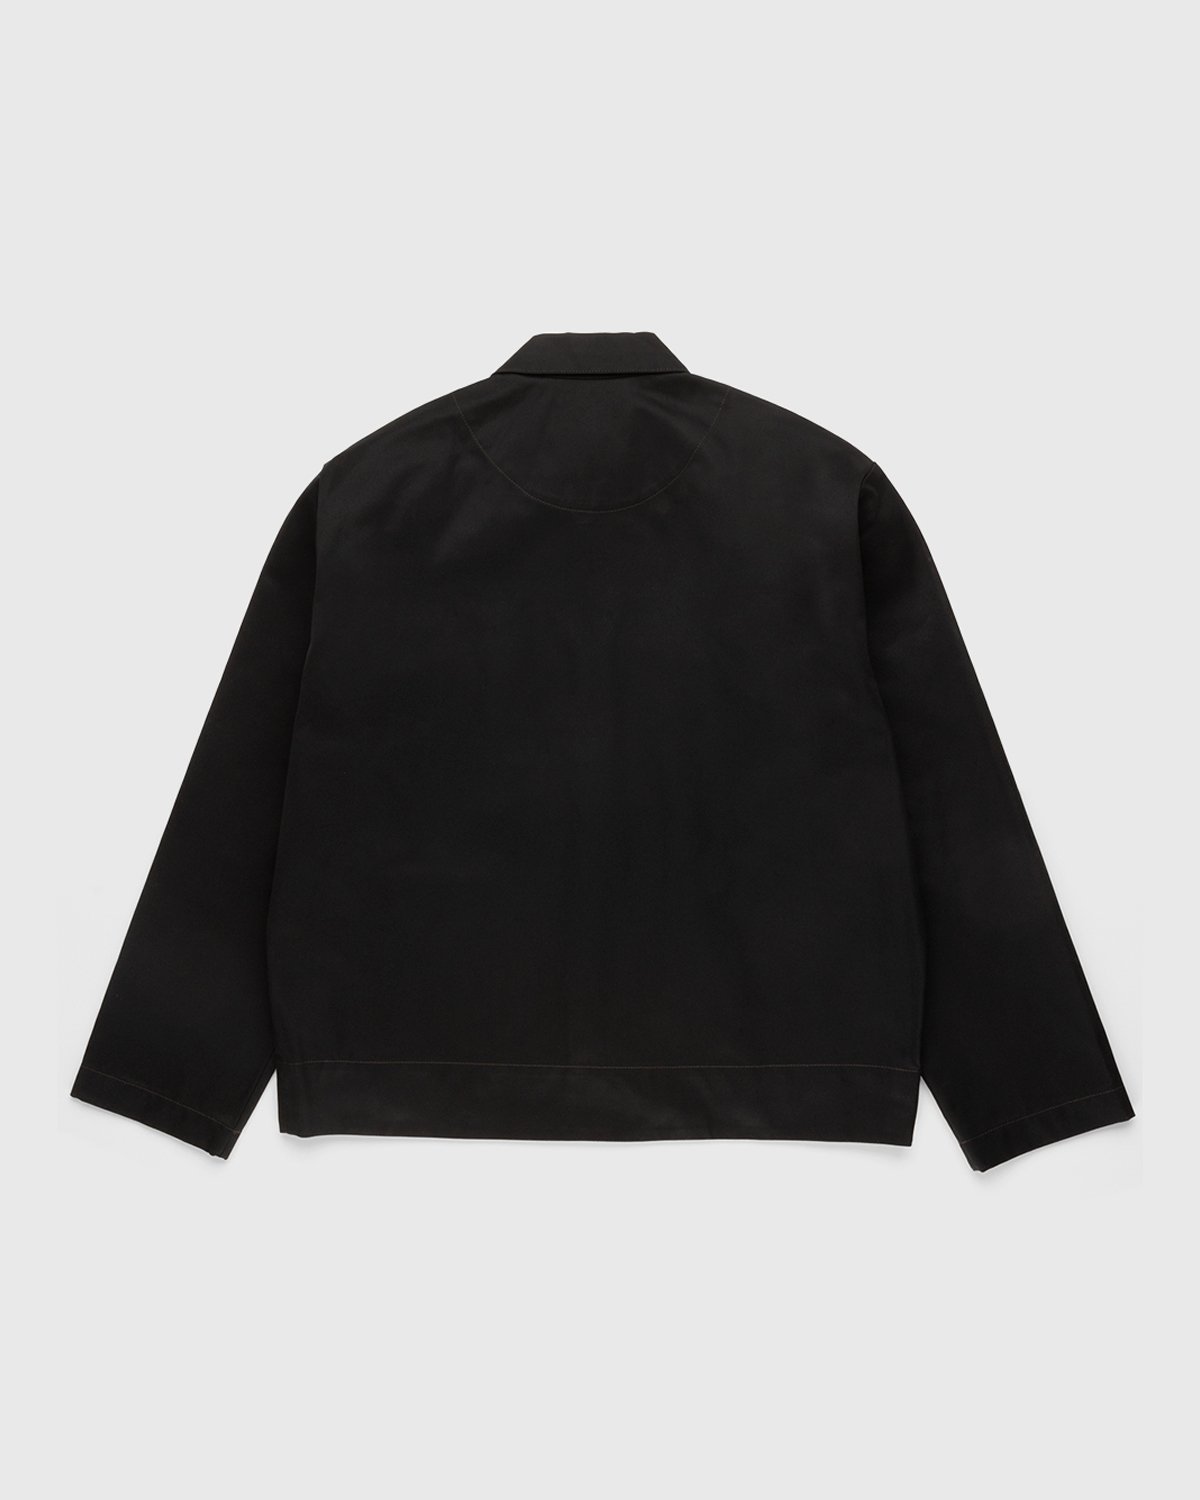 Acne Studios - Cotton Twill Jacket Black - Clothing - Black - Image 2